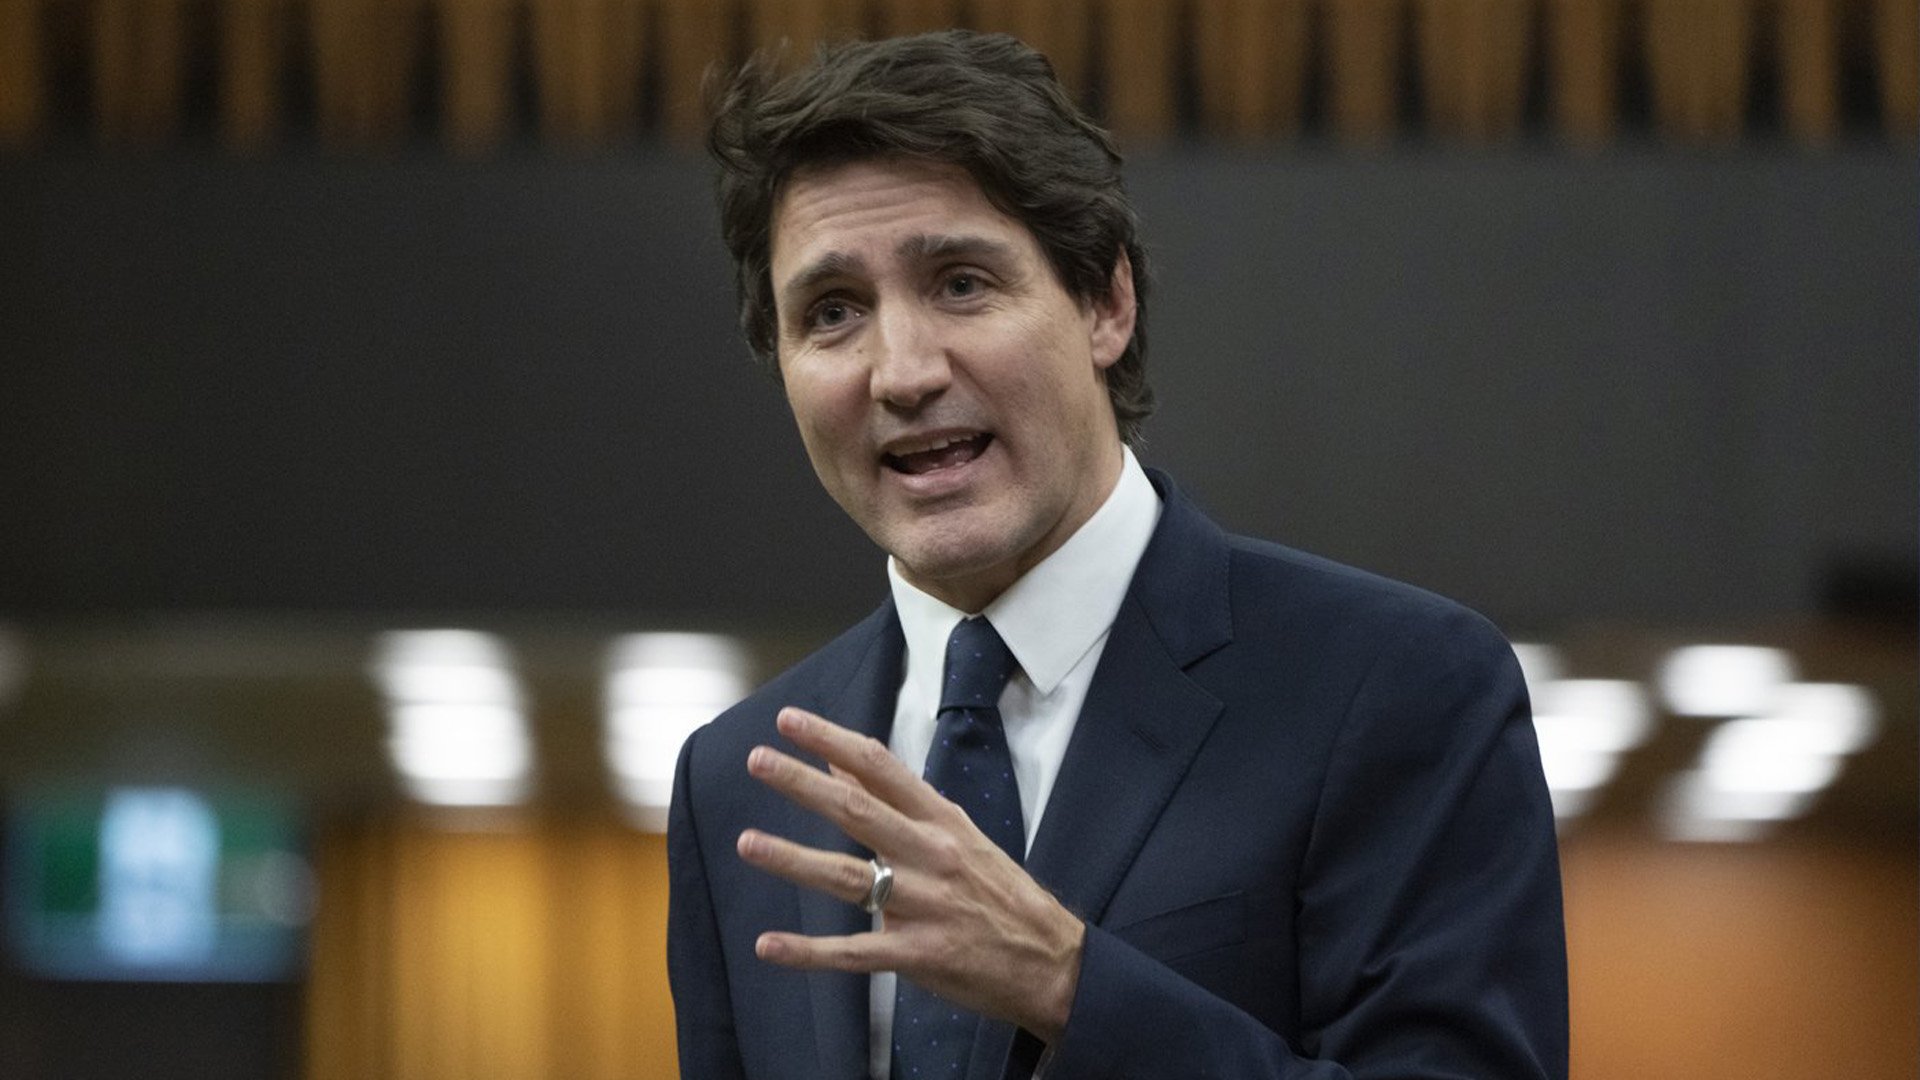 Le premier ministre Justin Trudeau appelle l'Ouganda à abroger la législation que le pays d'Afrique de l'Est a adoptée cette semaine pour imposer la peine de mort aux membres de la communauté LGBTQ. Trudeau répond à une question de l'opposition lors de la période des questions, le mercredi 22 mars 2023 à Ottawa.